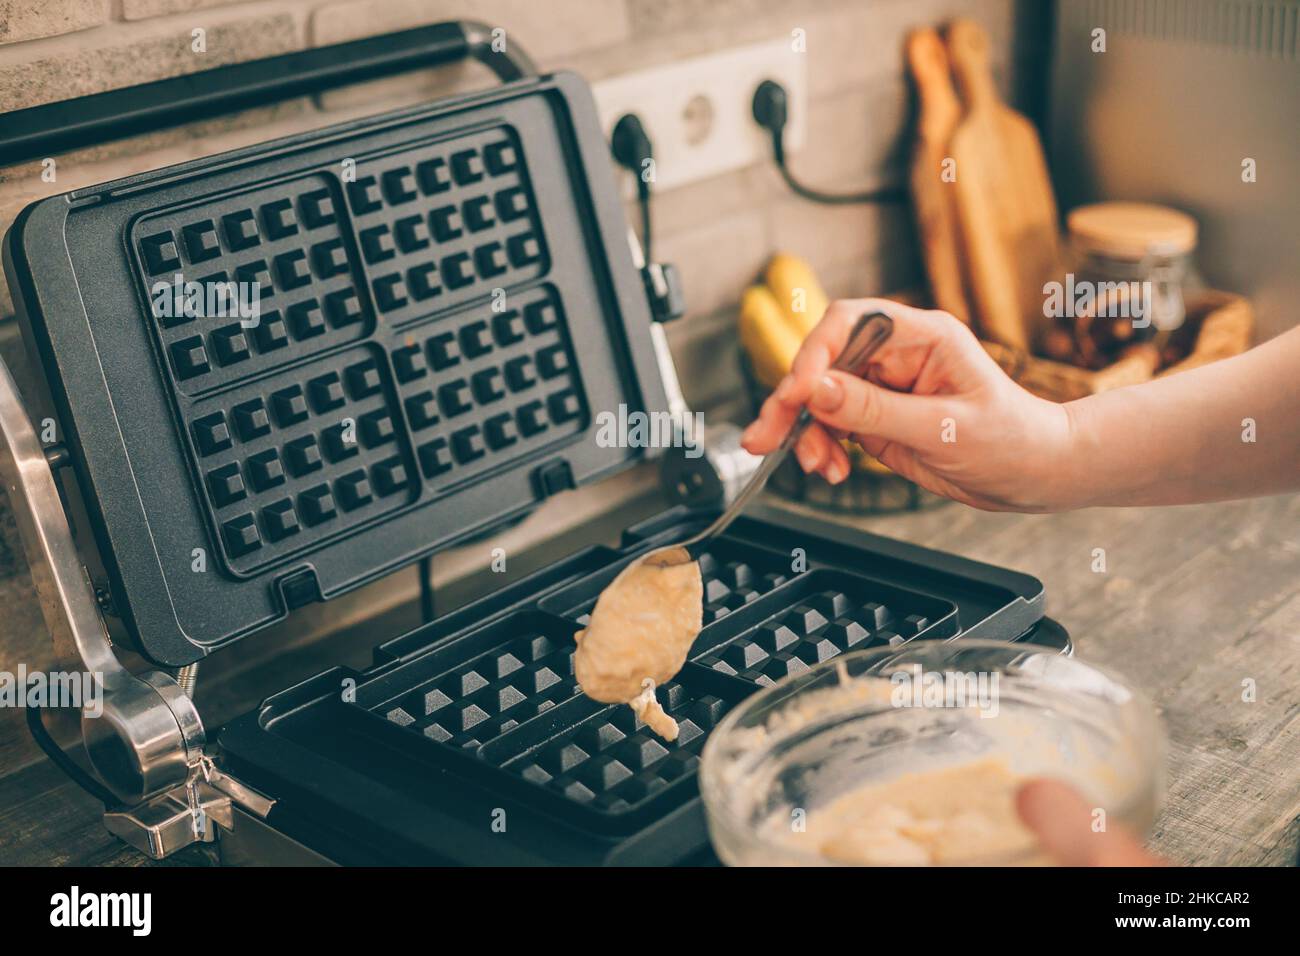 https://c8.alamy.com/compes/2hkcar2/mujer-joven-preparando-gofres-belgas-en-la-cocina-proceso-de-coccion-2hkcar2.jpg